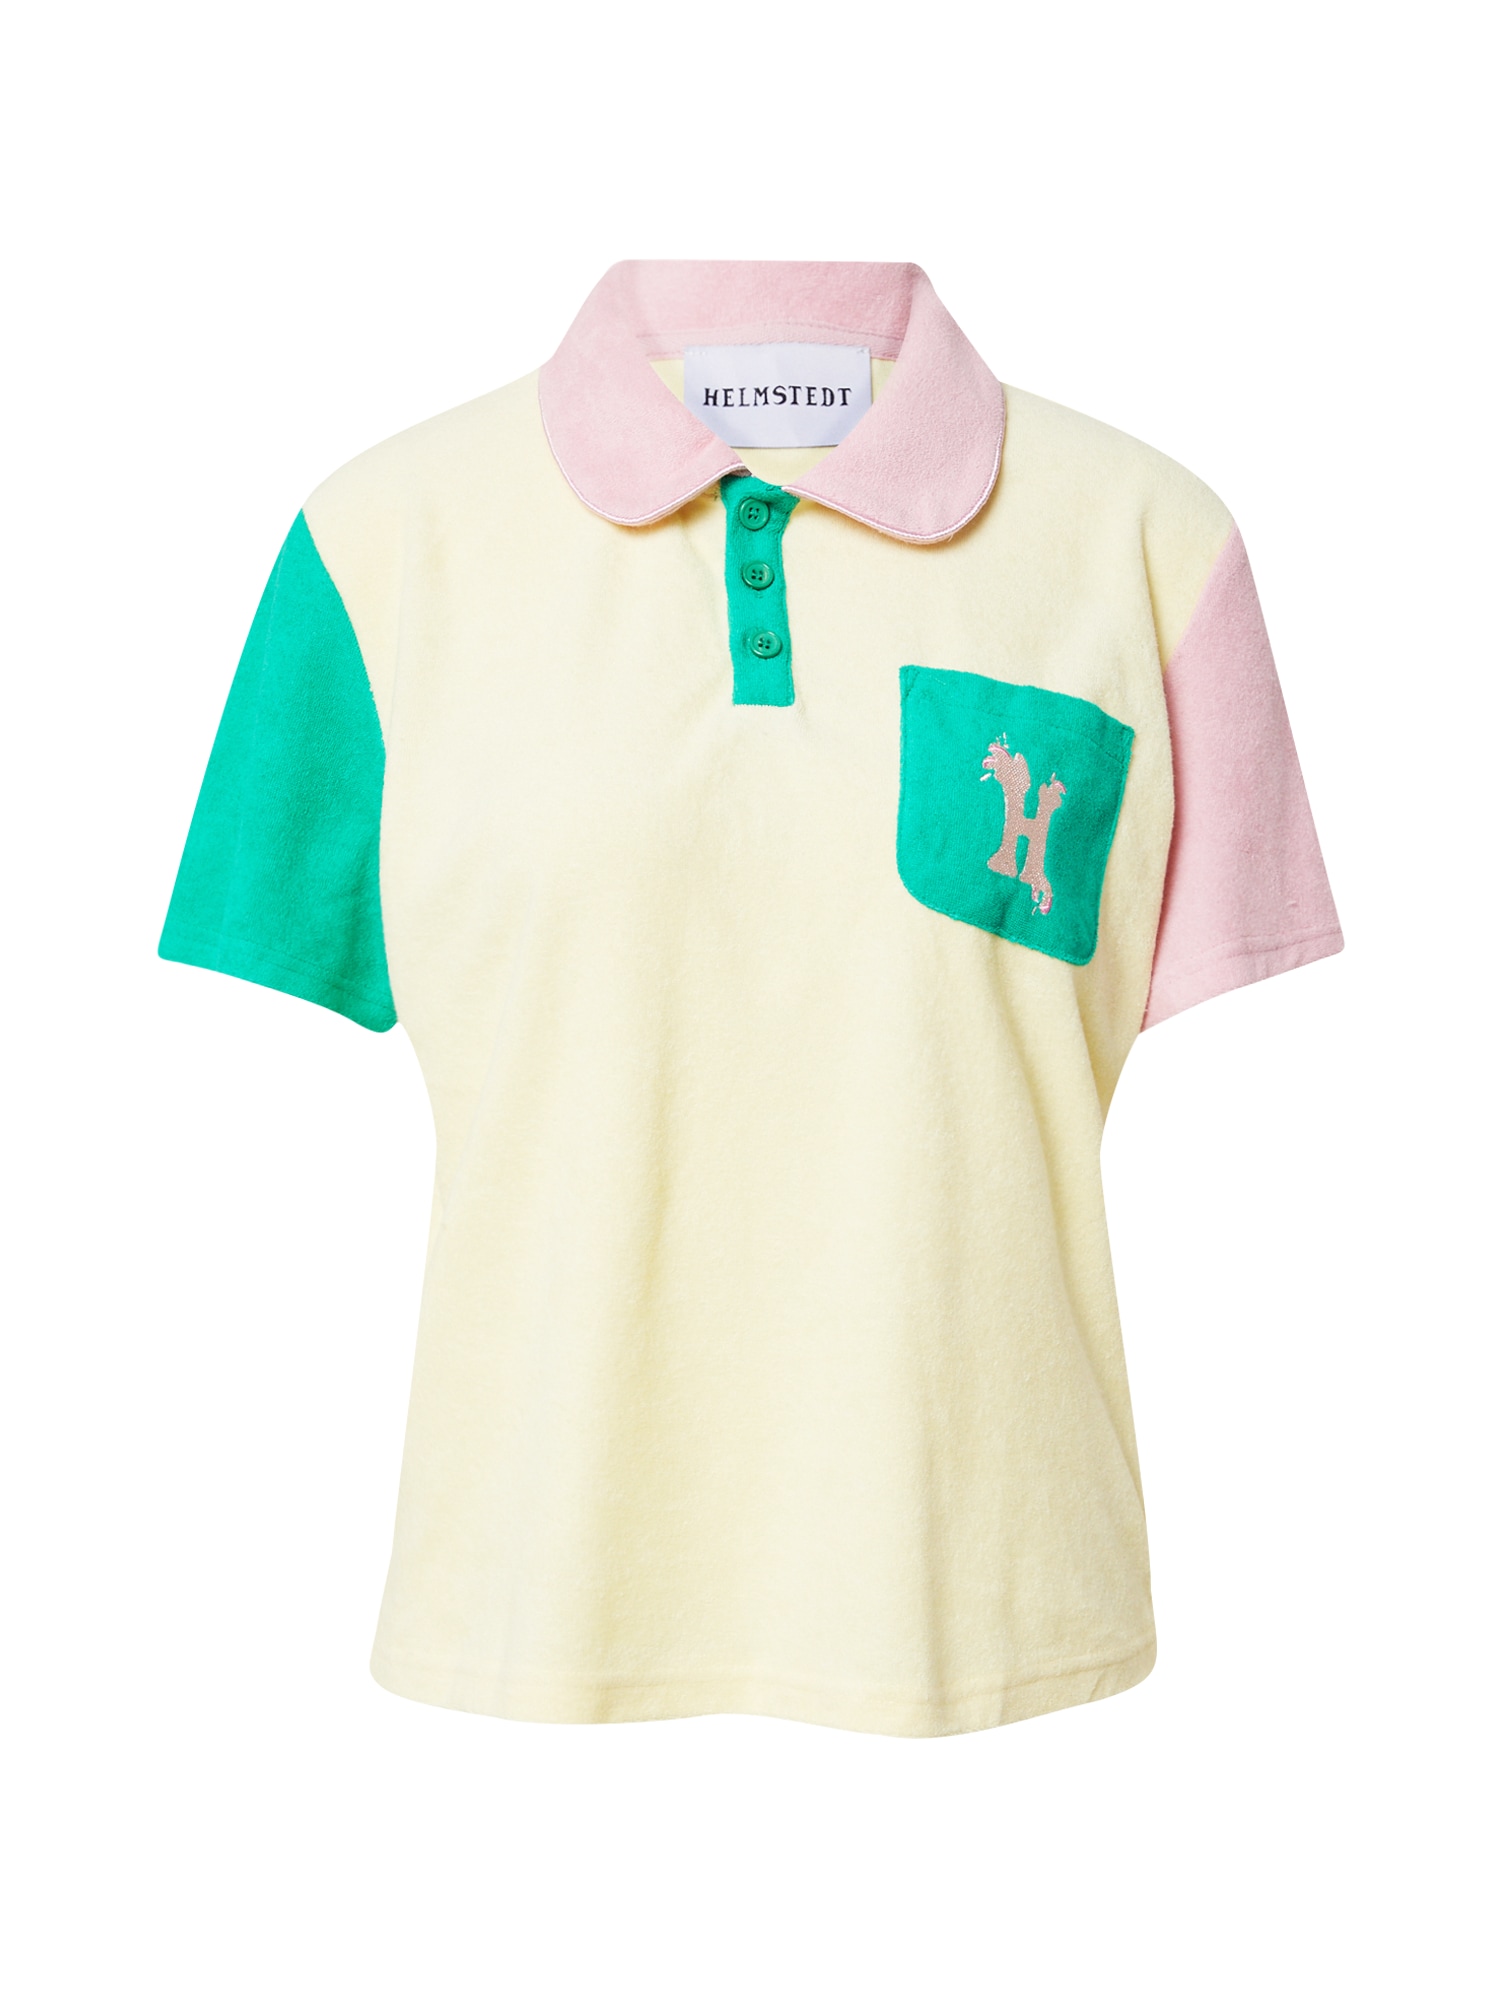 Helmstedt Marškinėliai 'Ricco' pastelinė geltona / žalia / rožių spalva